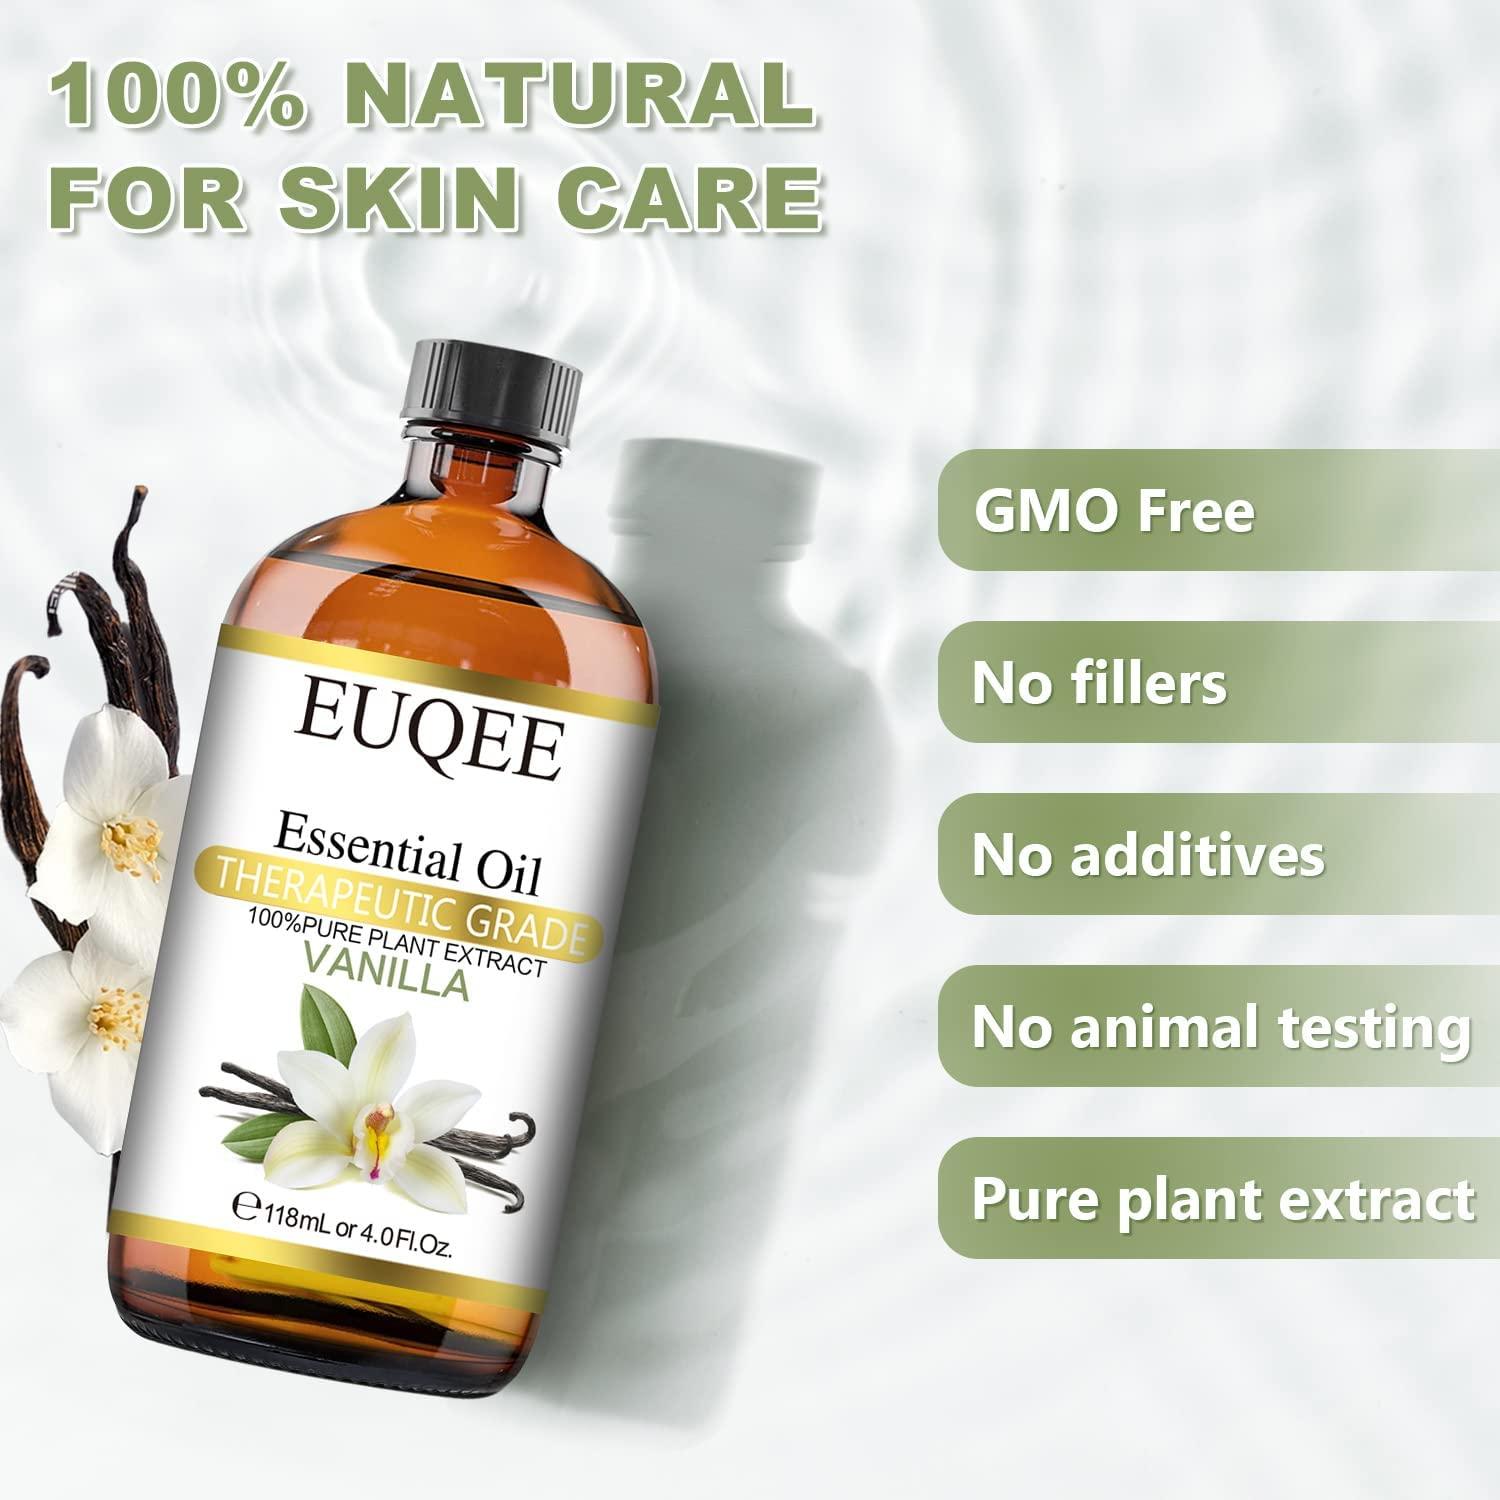 Coconut Vanilla Essential Oil 10 ml - Organic Plant Premium Grade Blend  Essential Oil for Aromatherapy, Skin Care, Diffuser